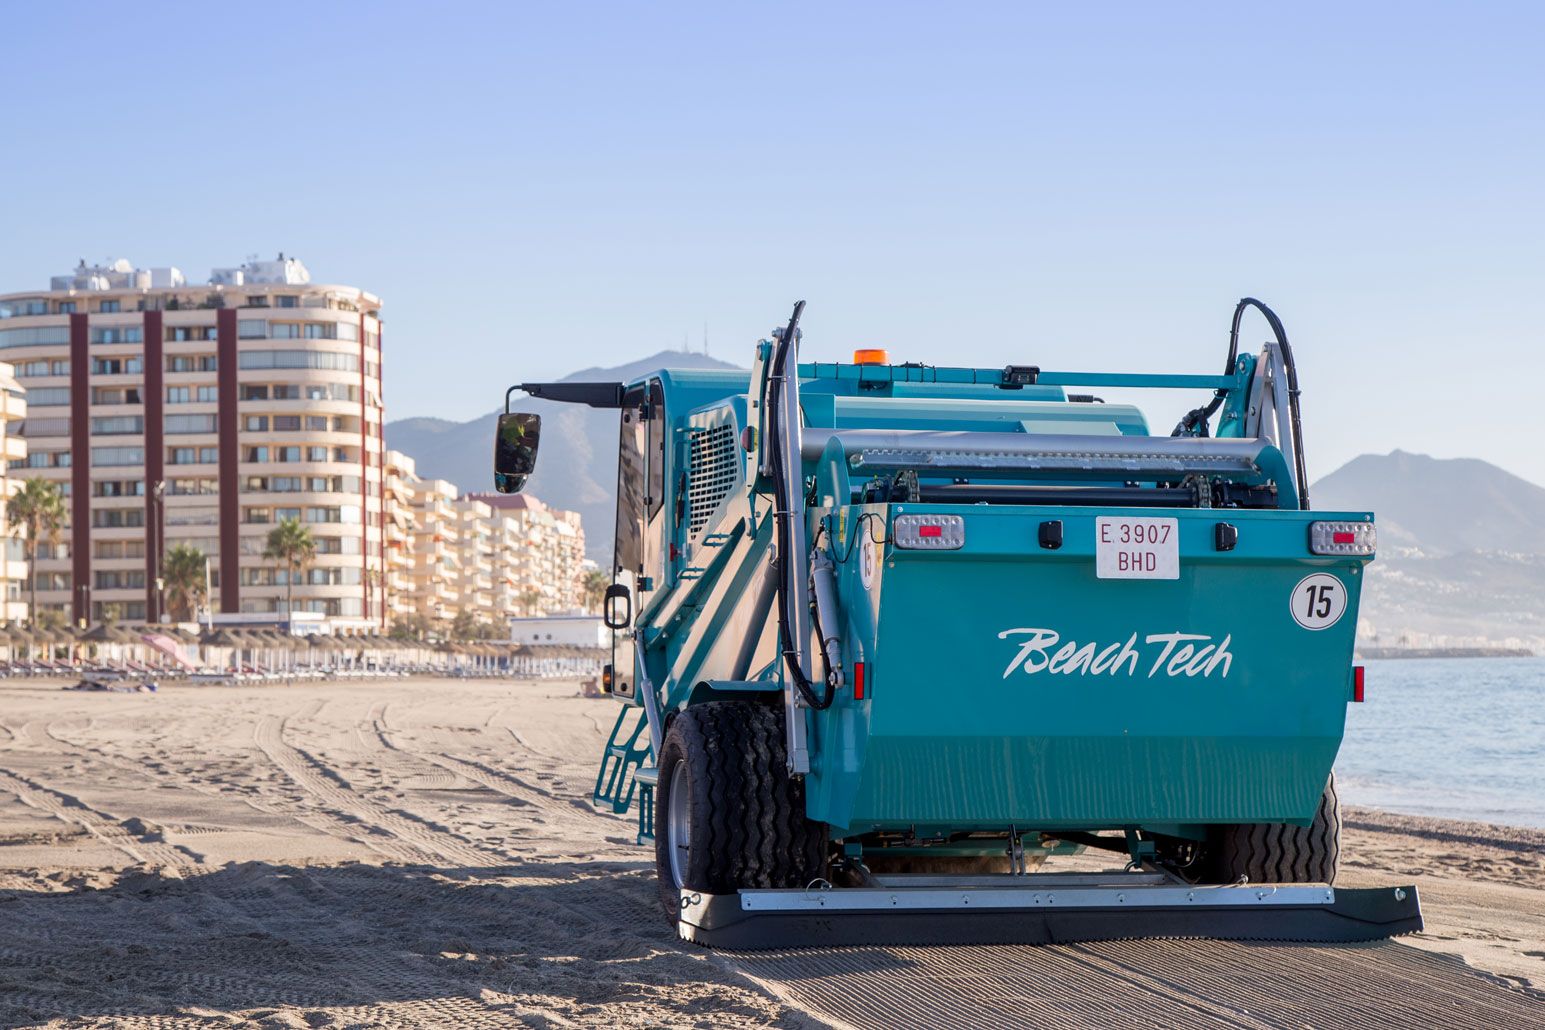 BeachTech 5500 self-propelled beach cleaner rear view on beach